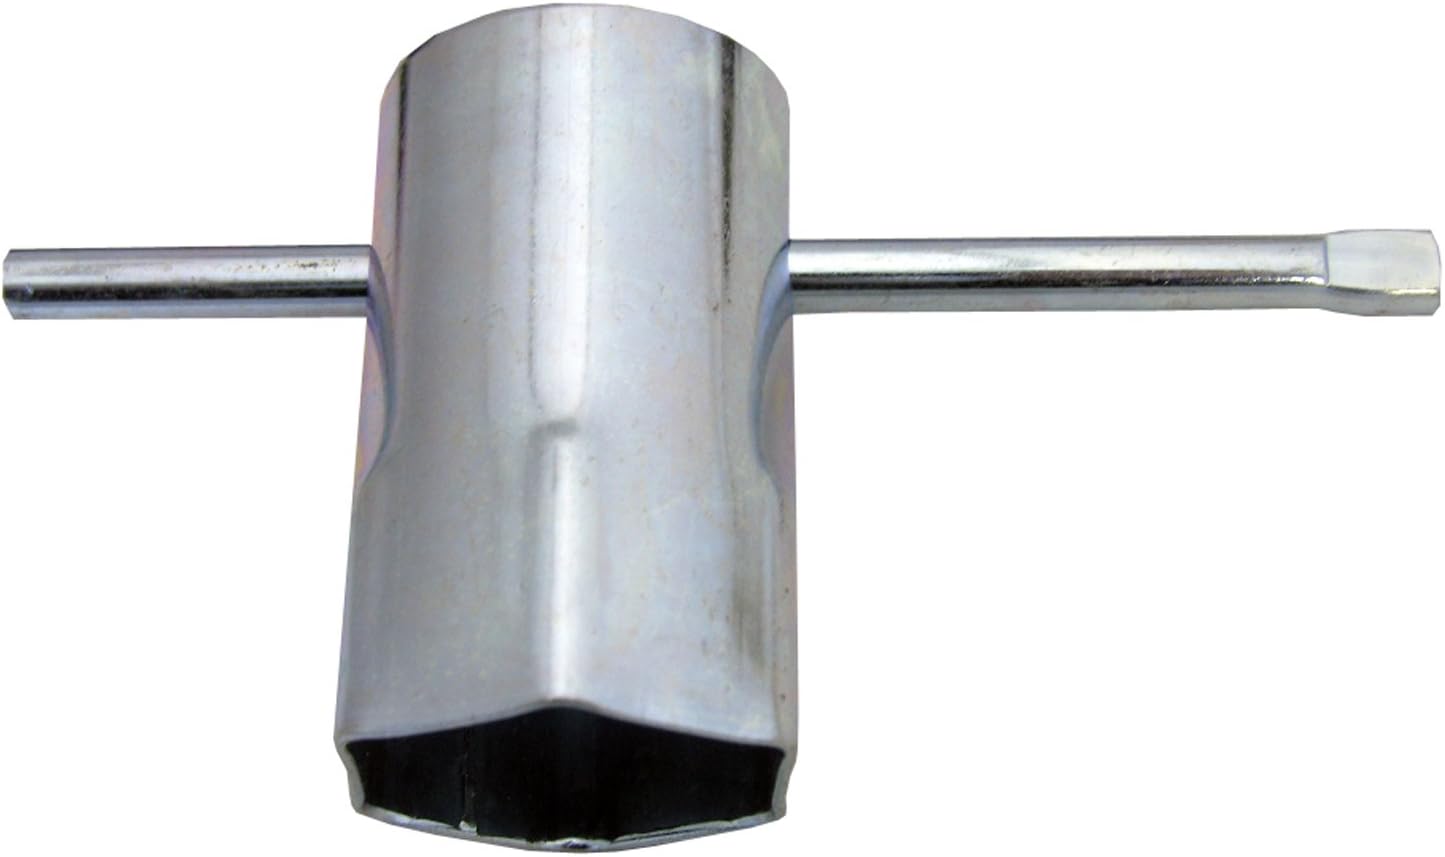 Lasco 40 1601 Heavy Duty Metal Water Heater Element Wrench 1 1 2